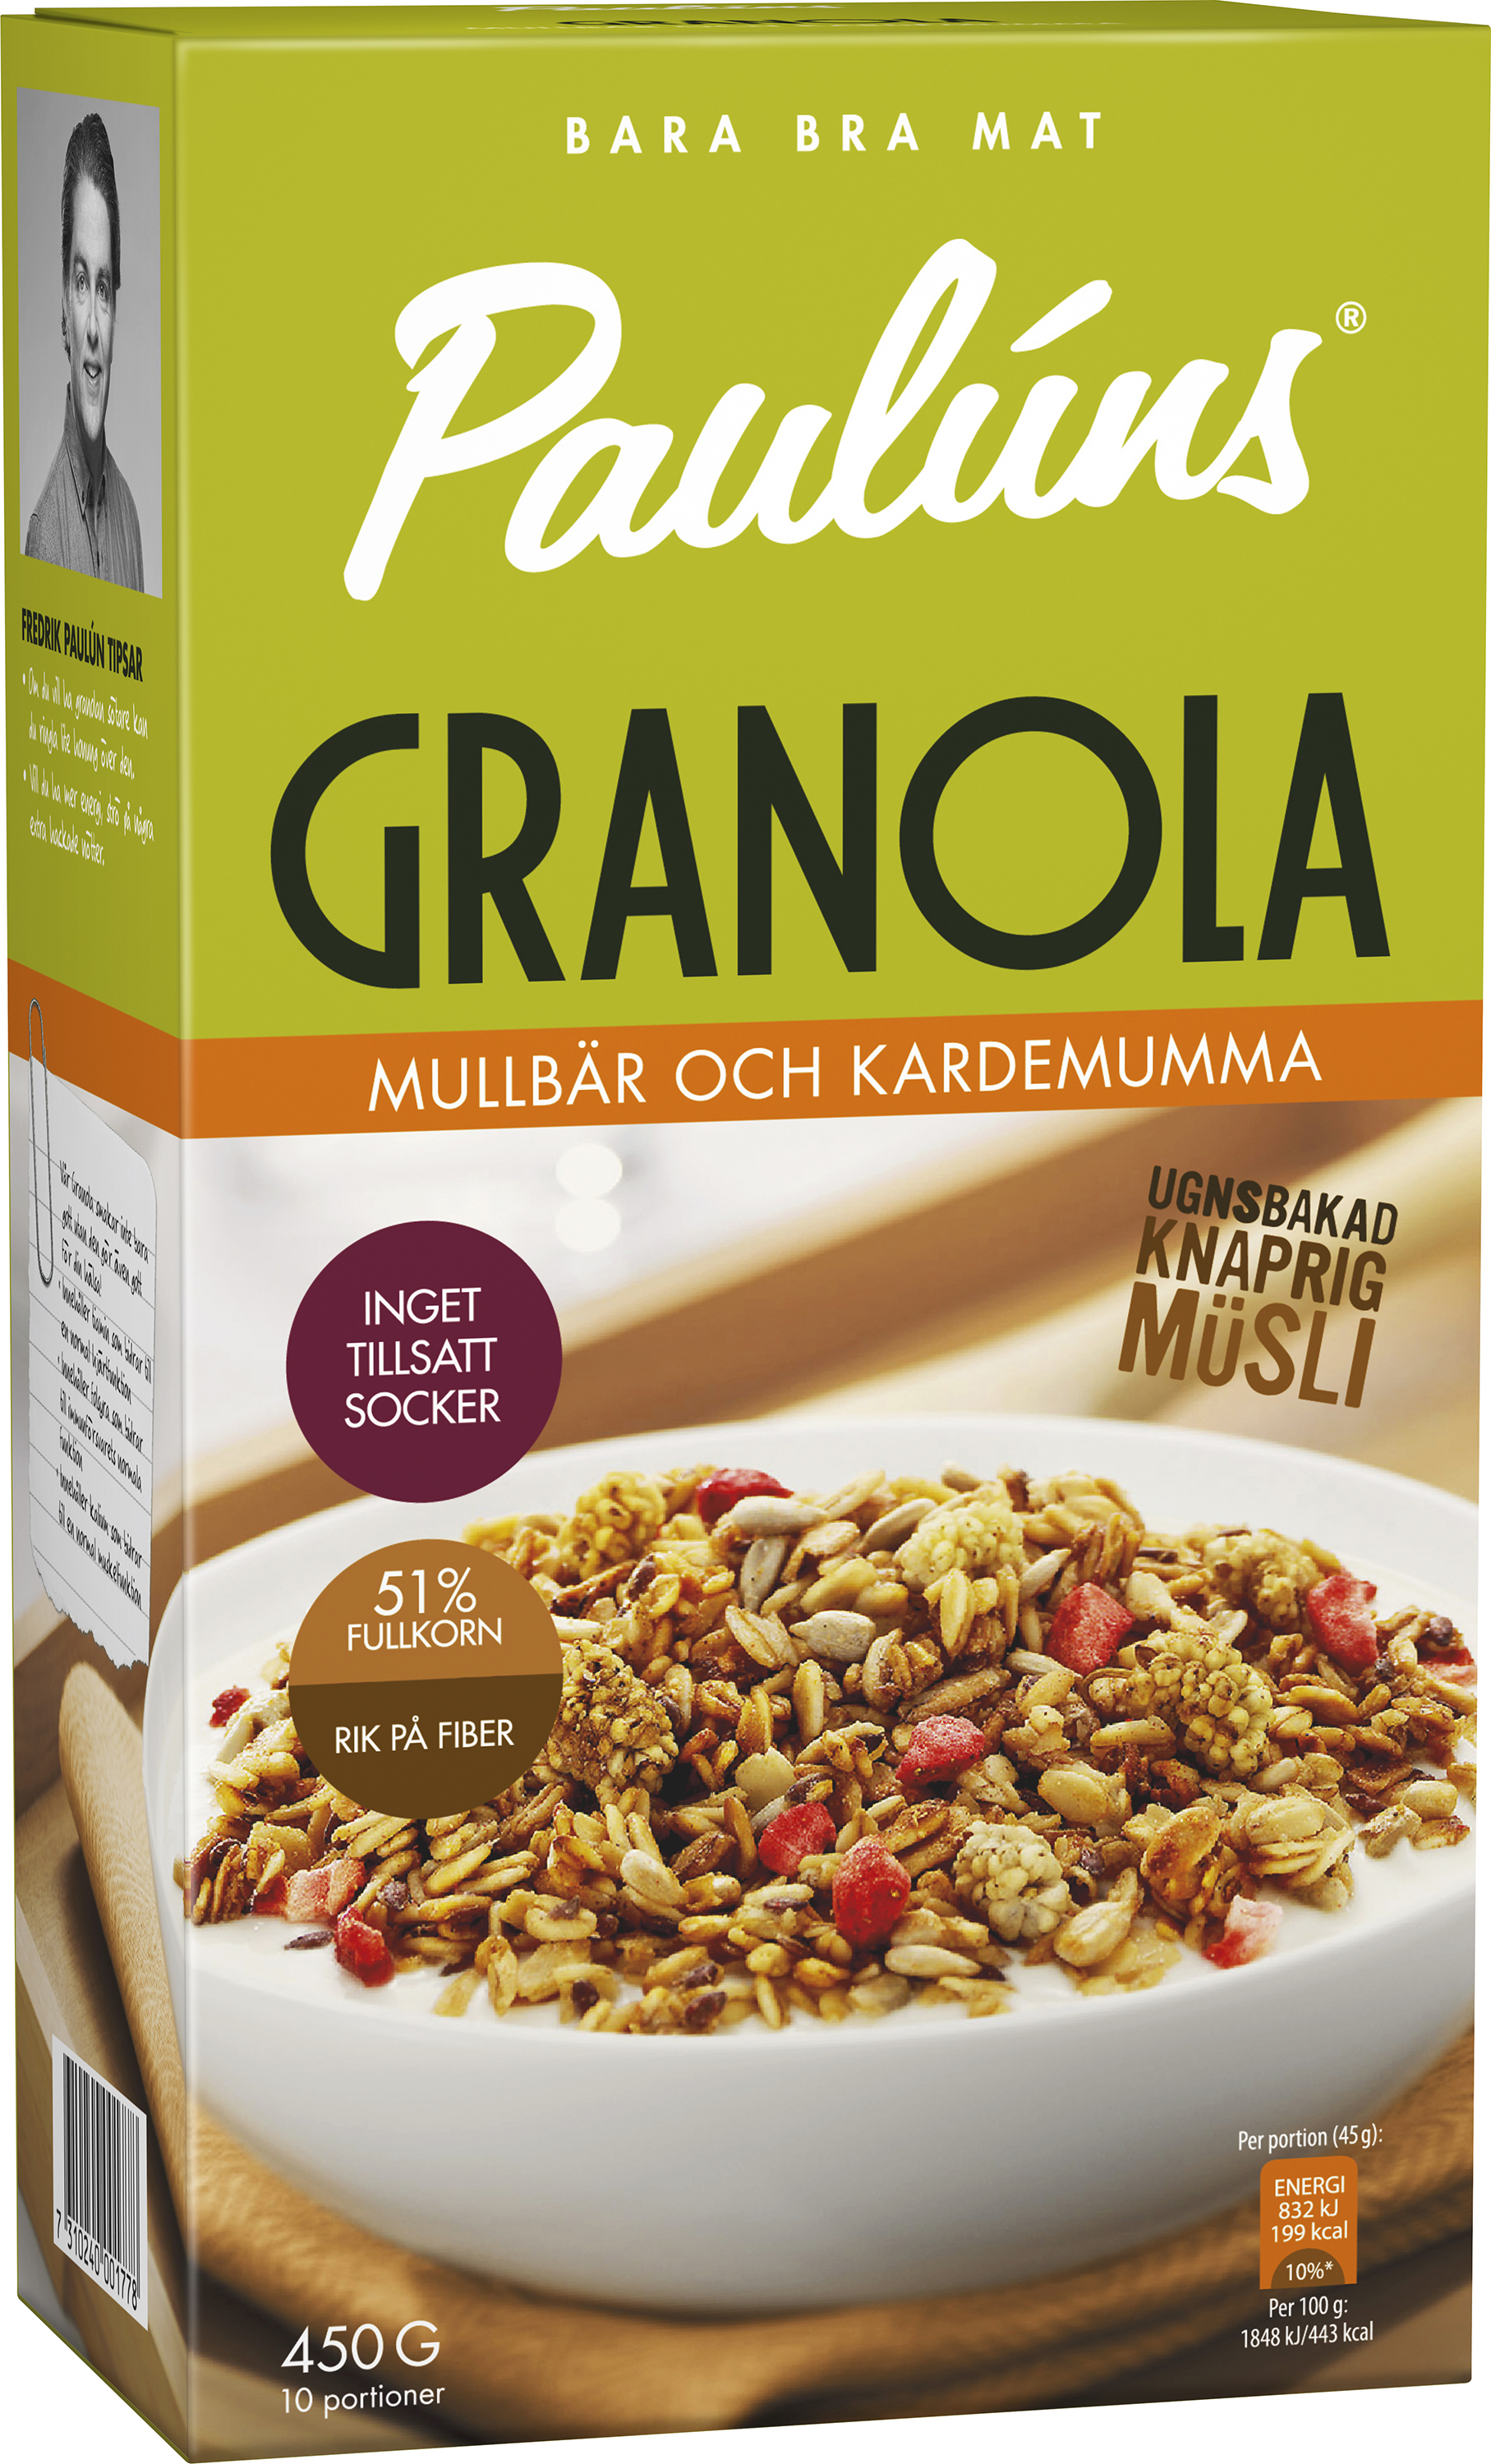 Paulúns Granola Mullbär Kardemumma 450 g